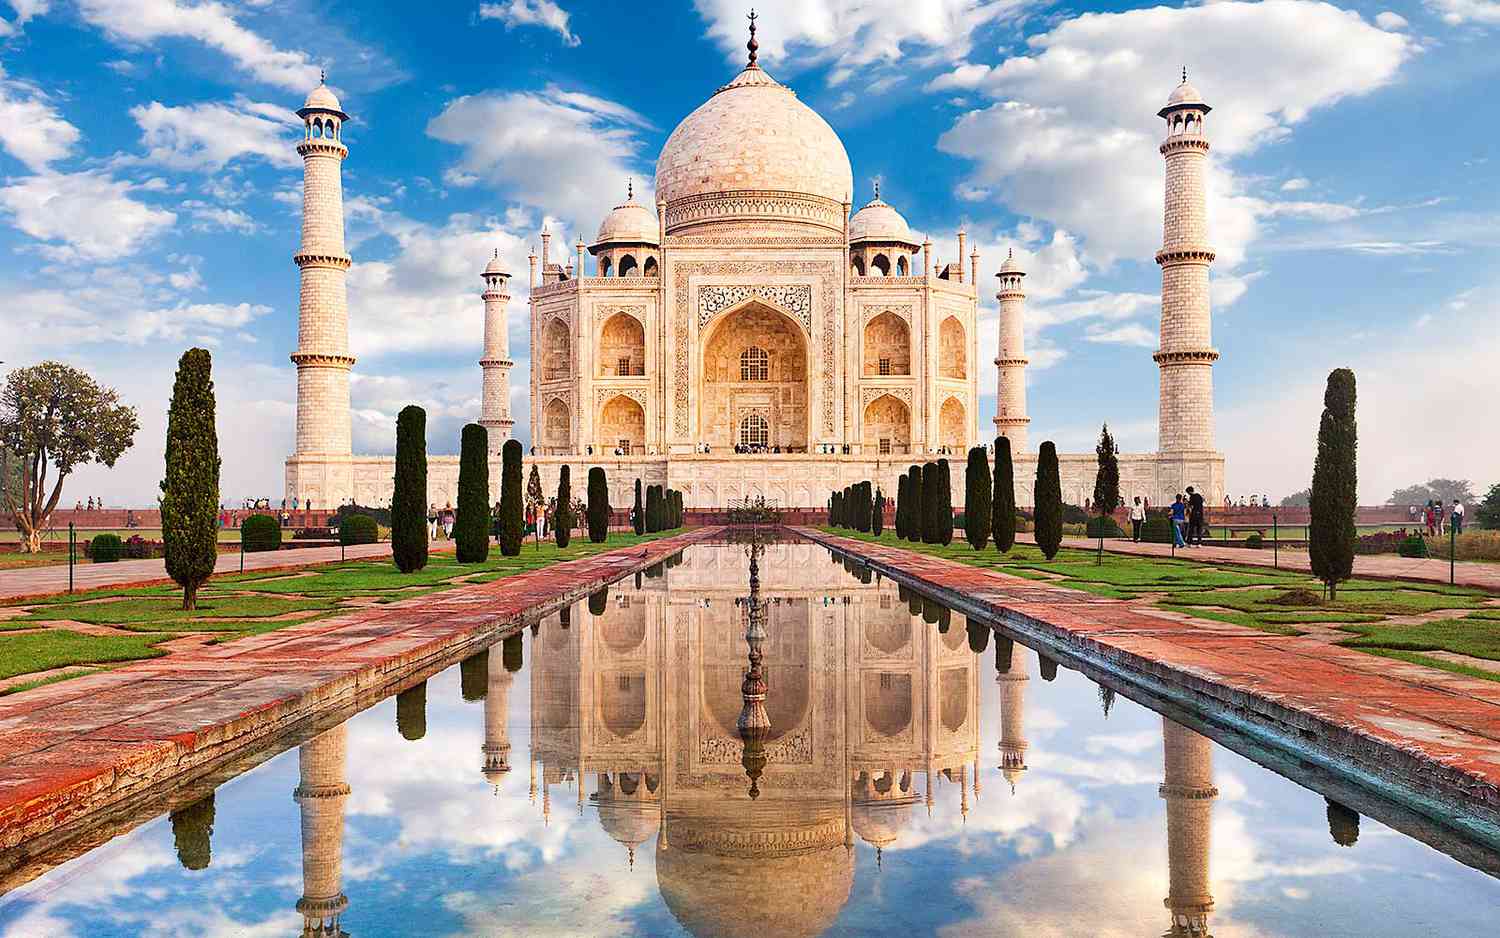 Taj Mahal Tour From Delhi By Car: Taj Mahal Tours tickets